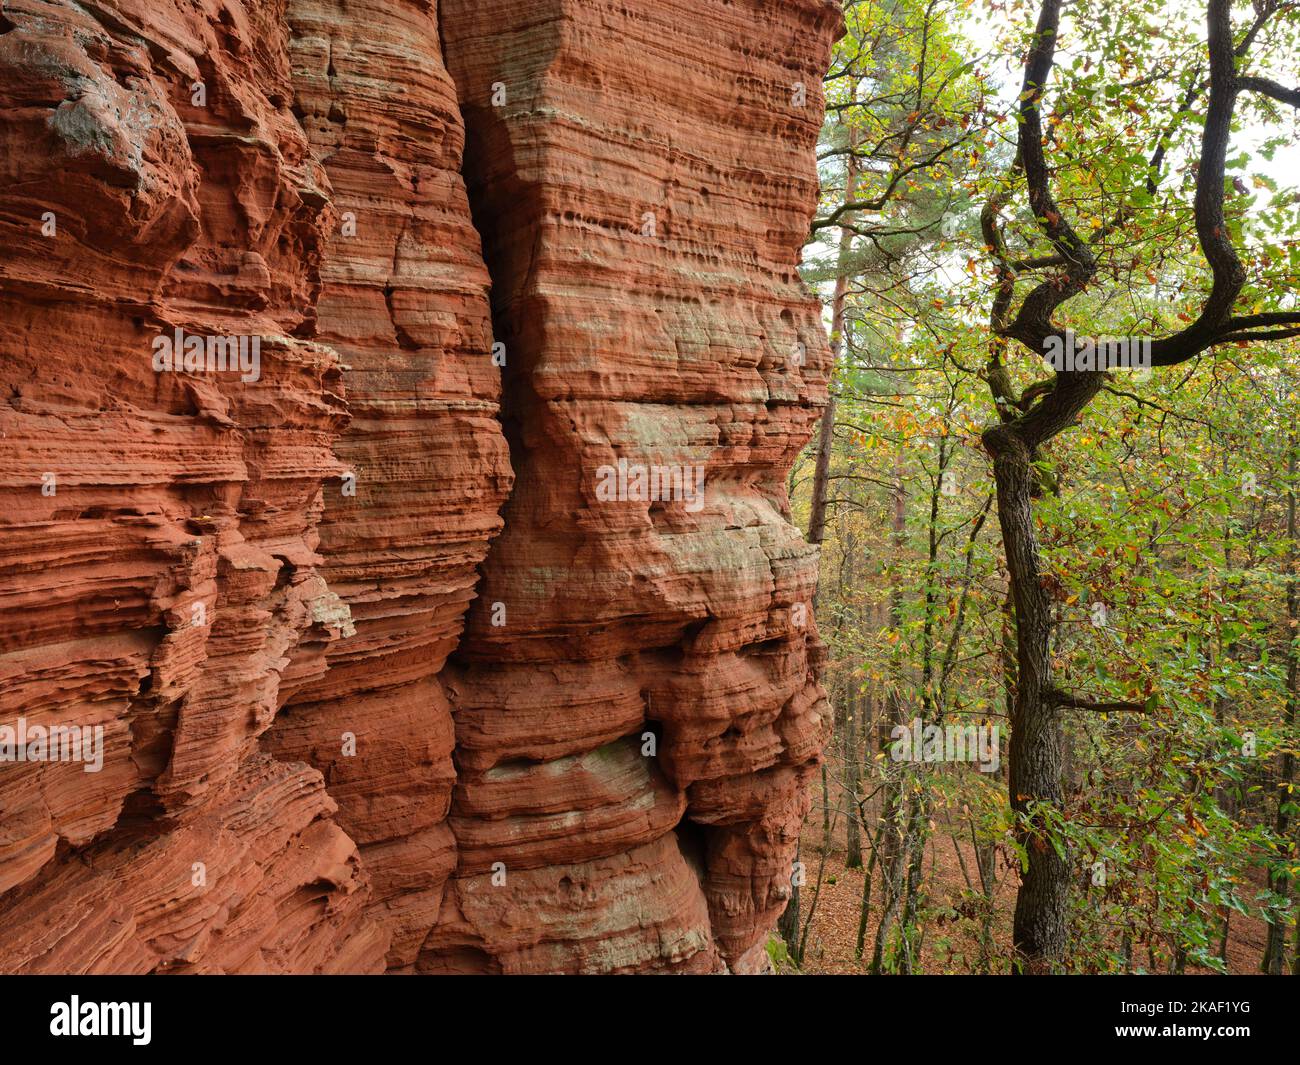 La formación rocosa de la Altschlossfelsen. Eppenbrunn, Renania-Palatinado, Alemania. Foto de stock